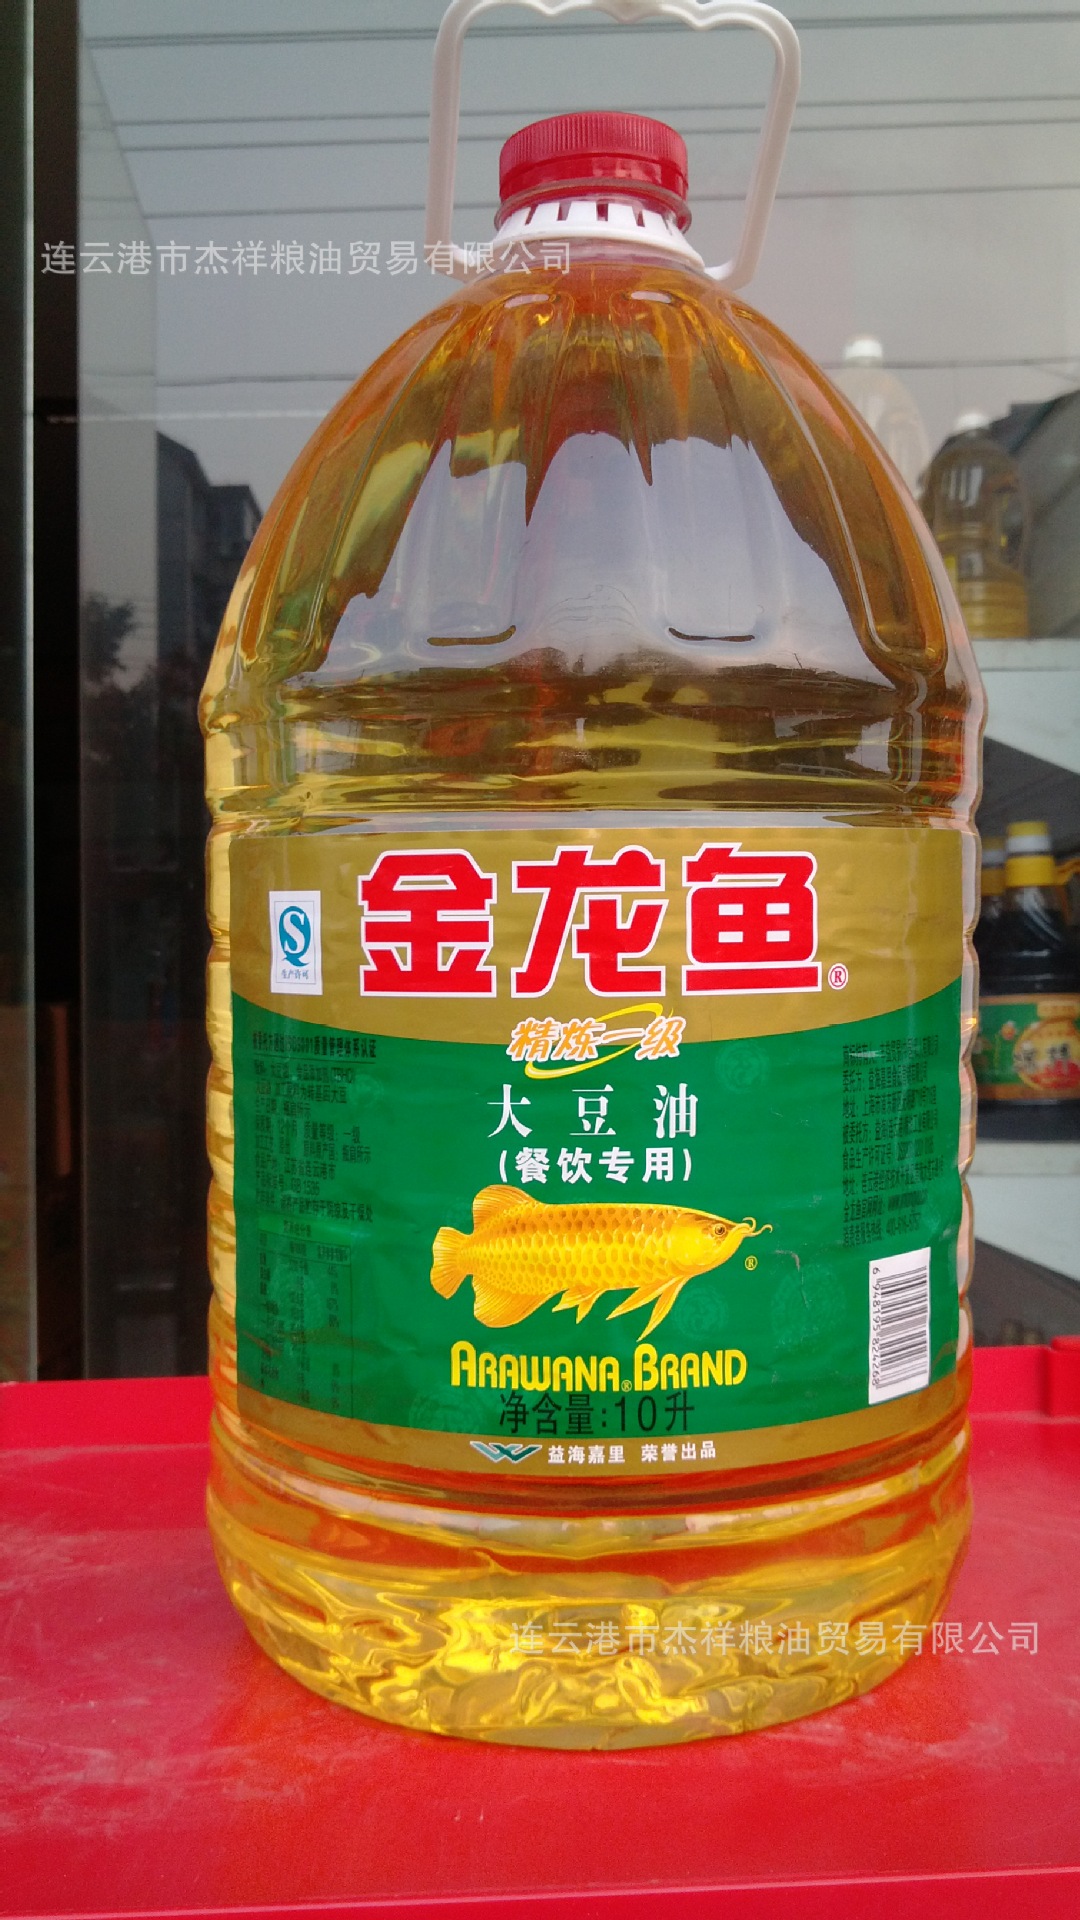 10l 金龙鱼 餐饮 大豆油 (jlyzbz0005)